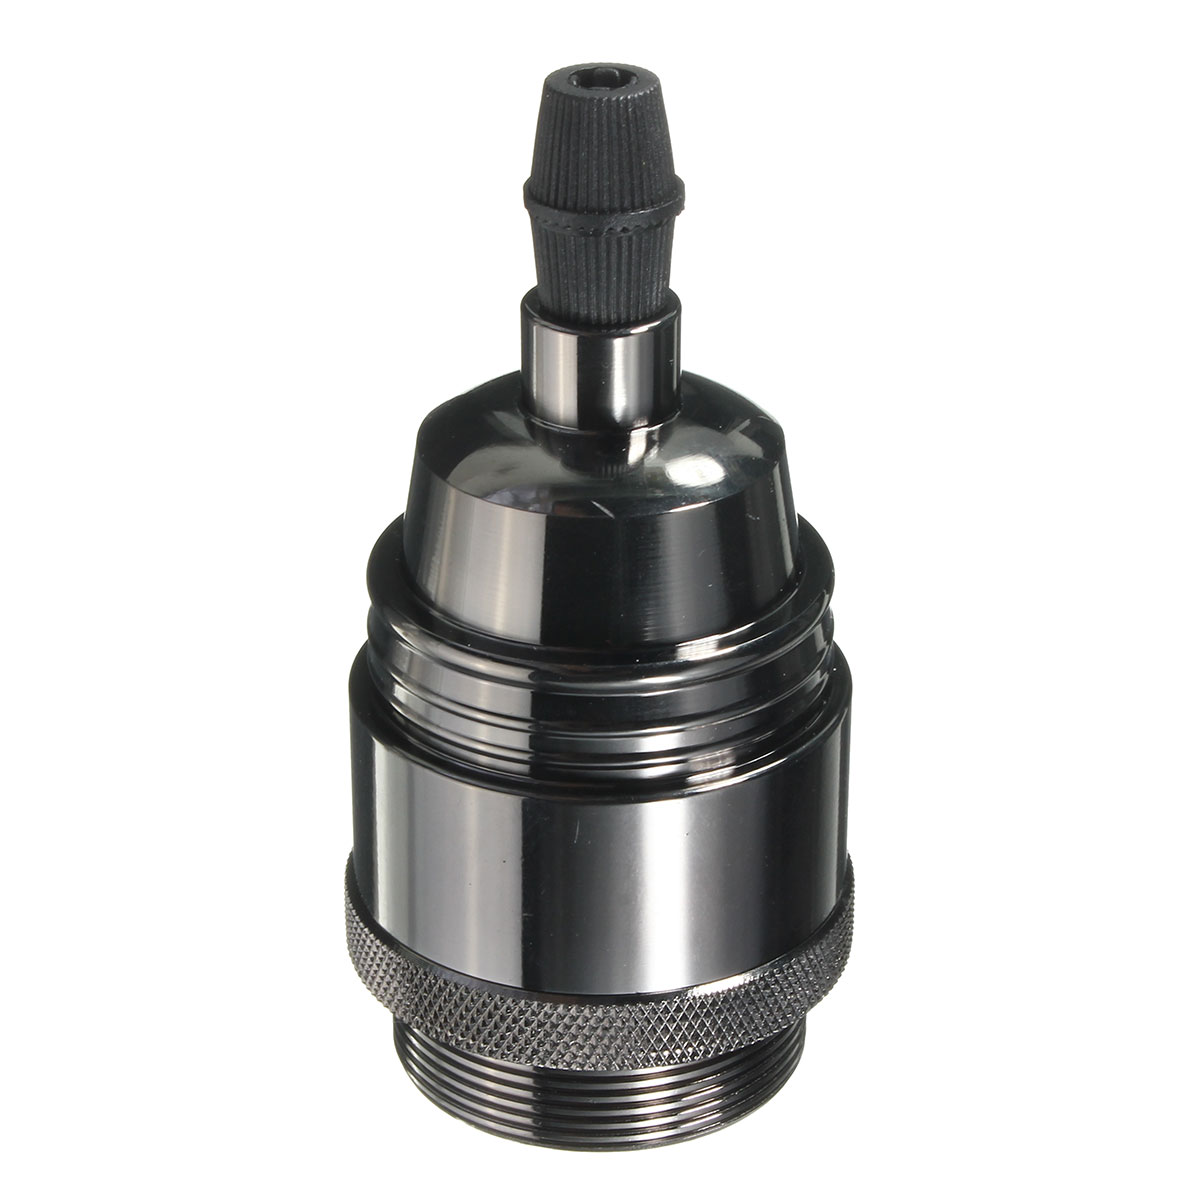 E27-Edison-Bulb-Adapter-Light-Socket-Lampholder-for-DIY-Handmade-Lamp-Pendant-AC110-250V-1431524-7